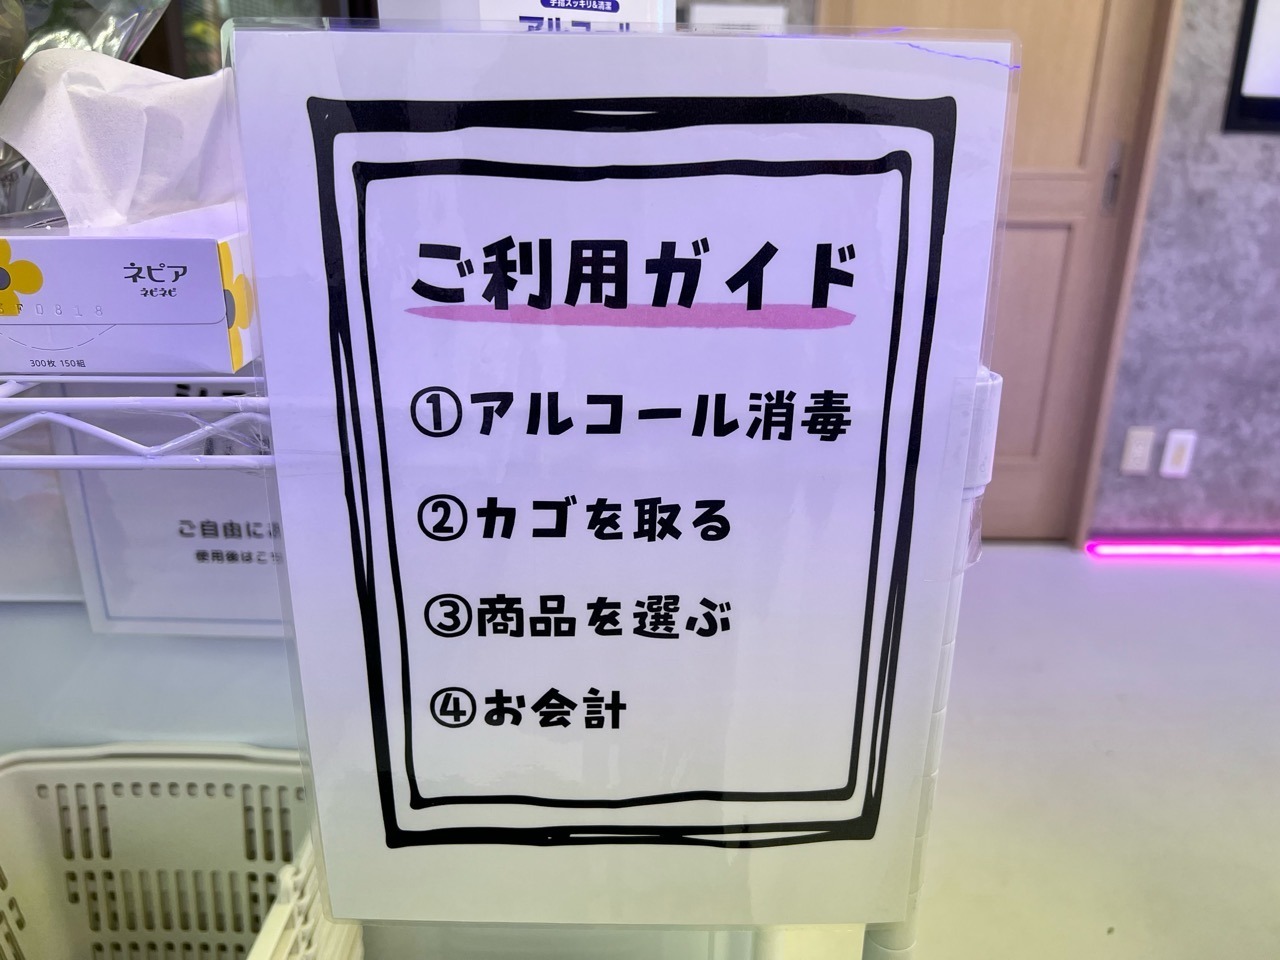 【24】スイーツ専門無人販売所 豊田店「ご利用ガイド」